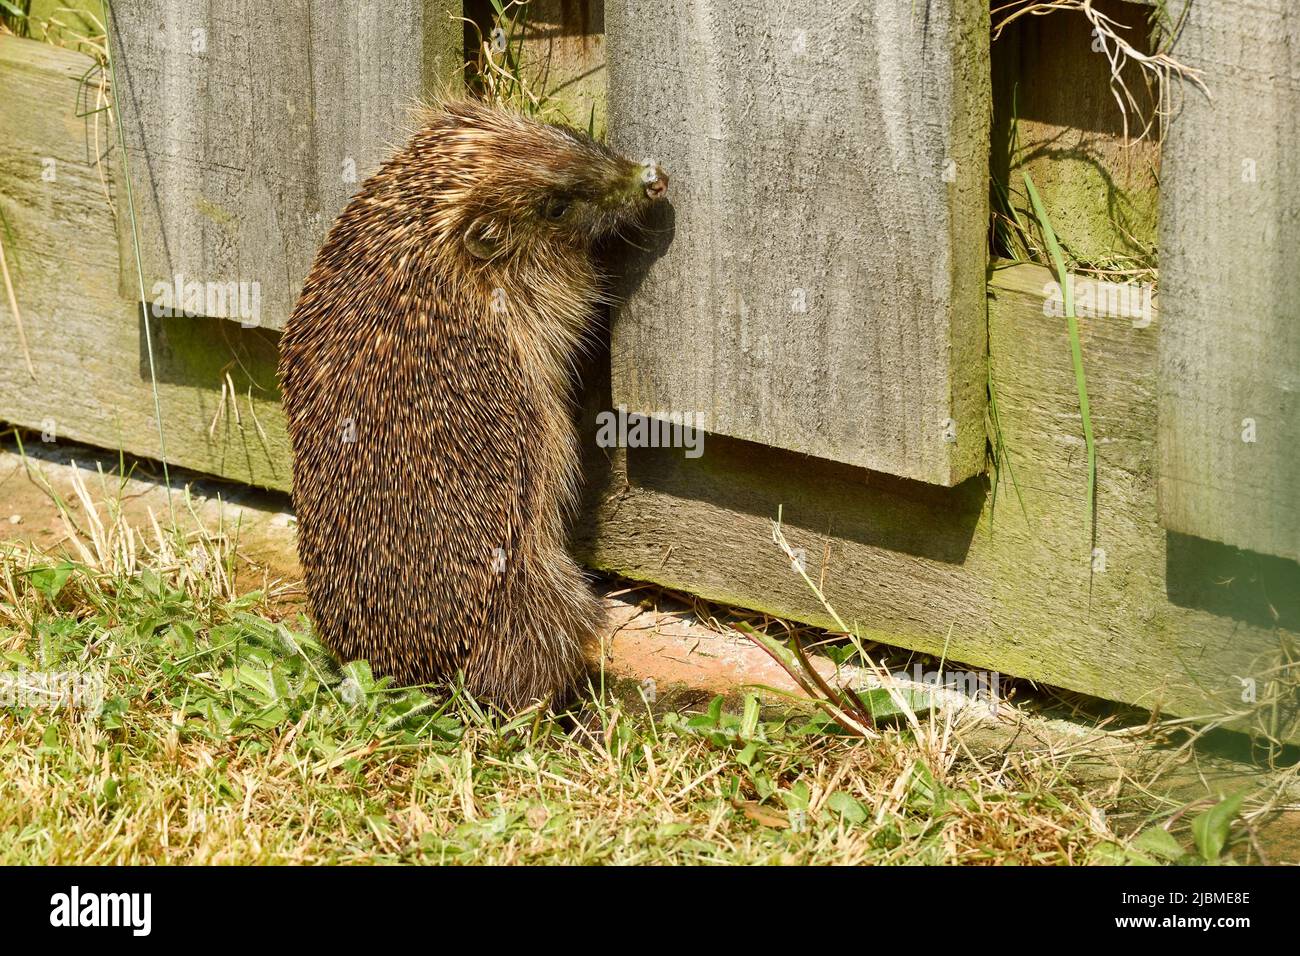 An adult hedgehog near a wooden garden fence UK Stock Photo